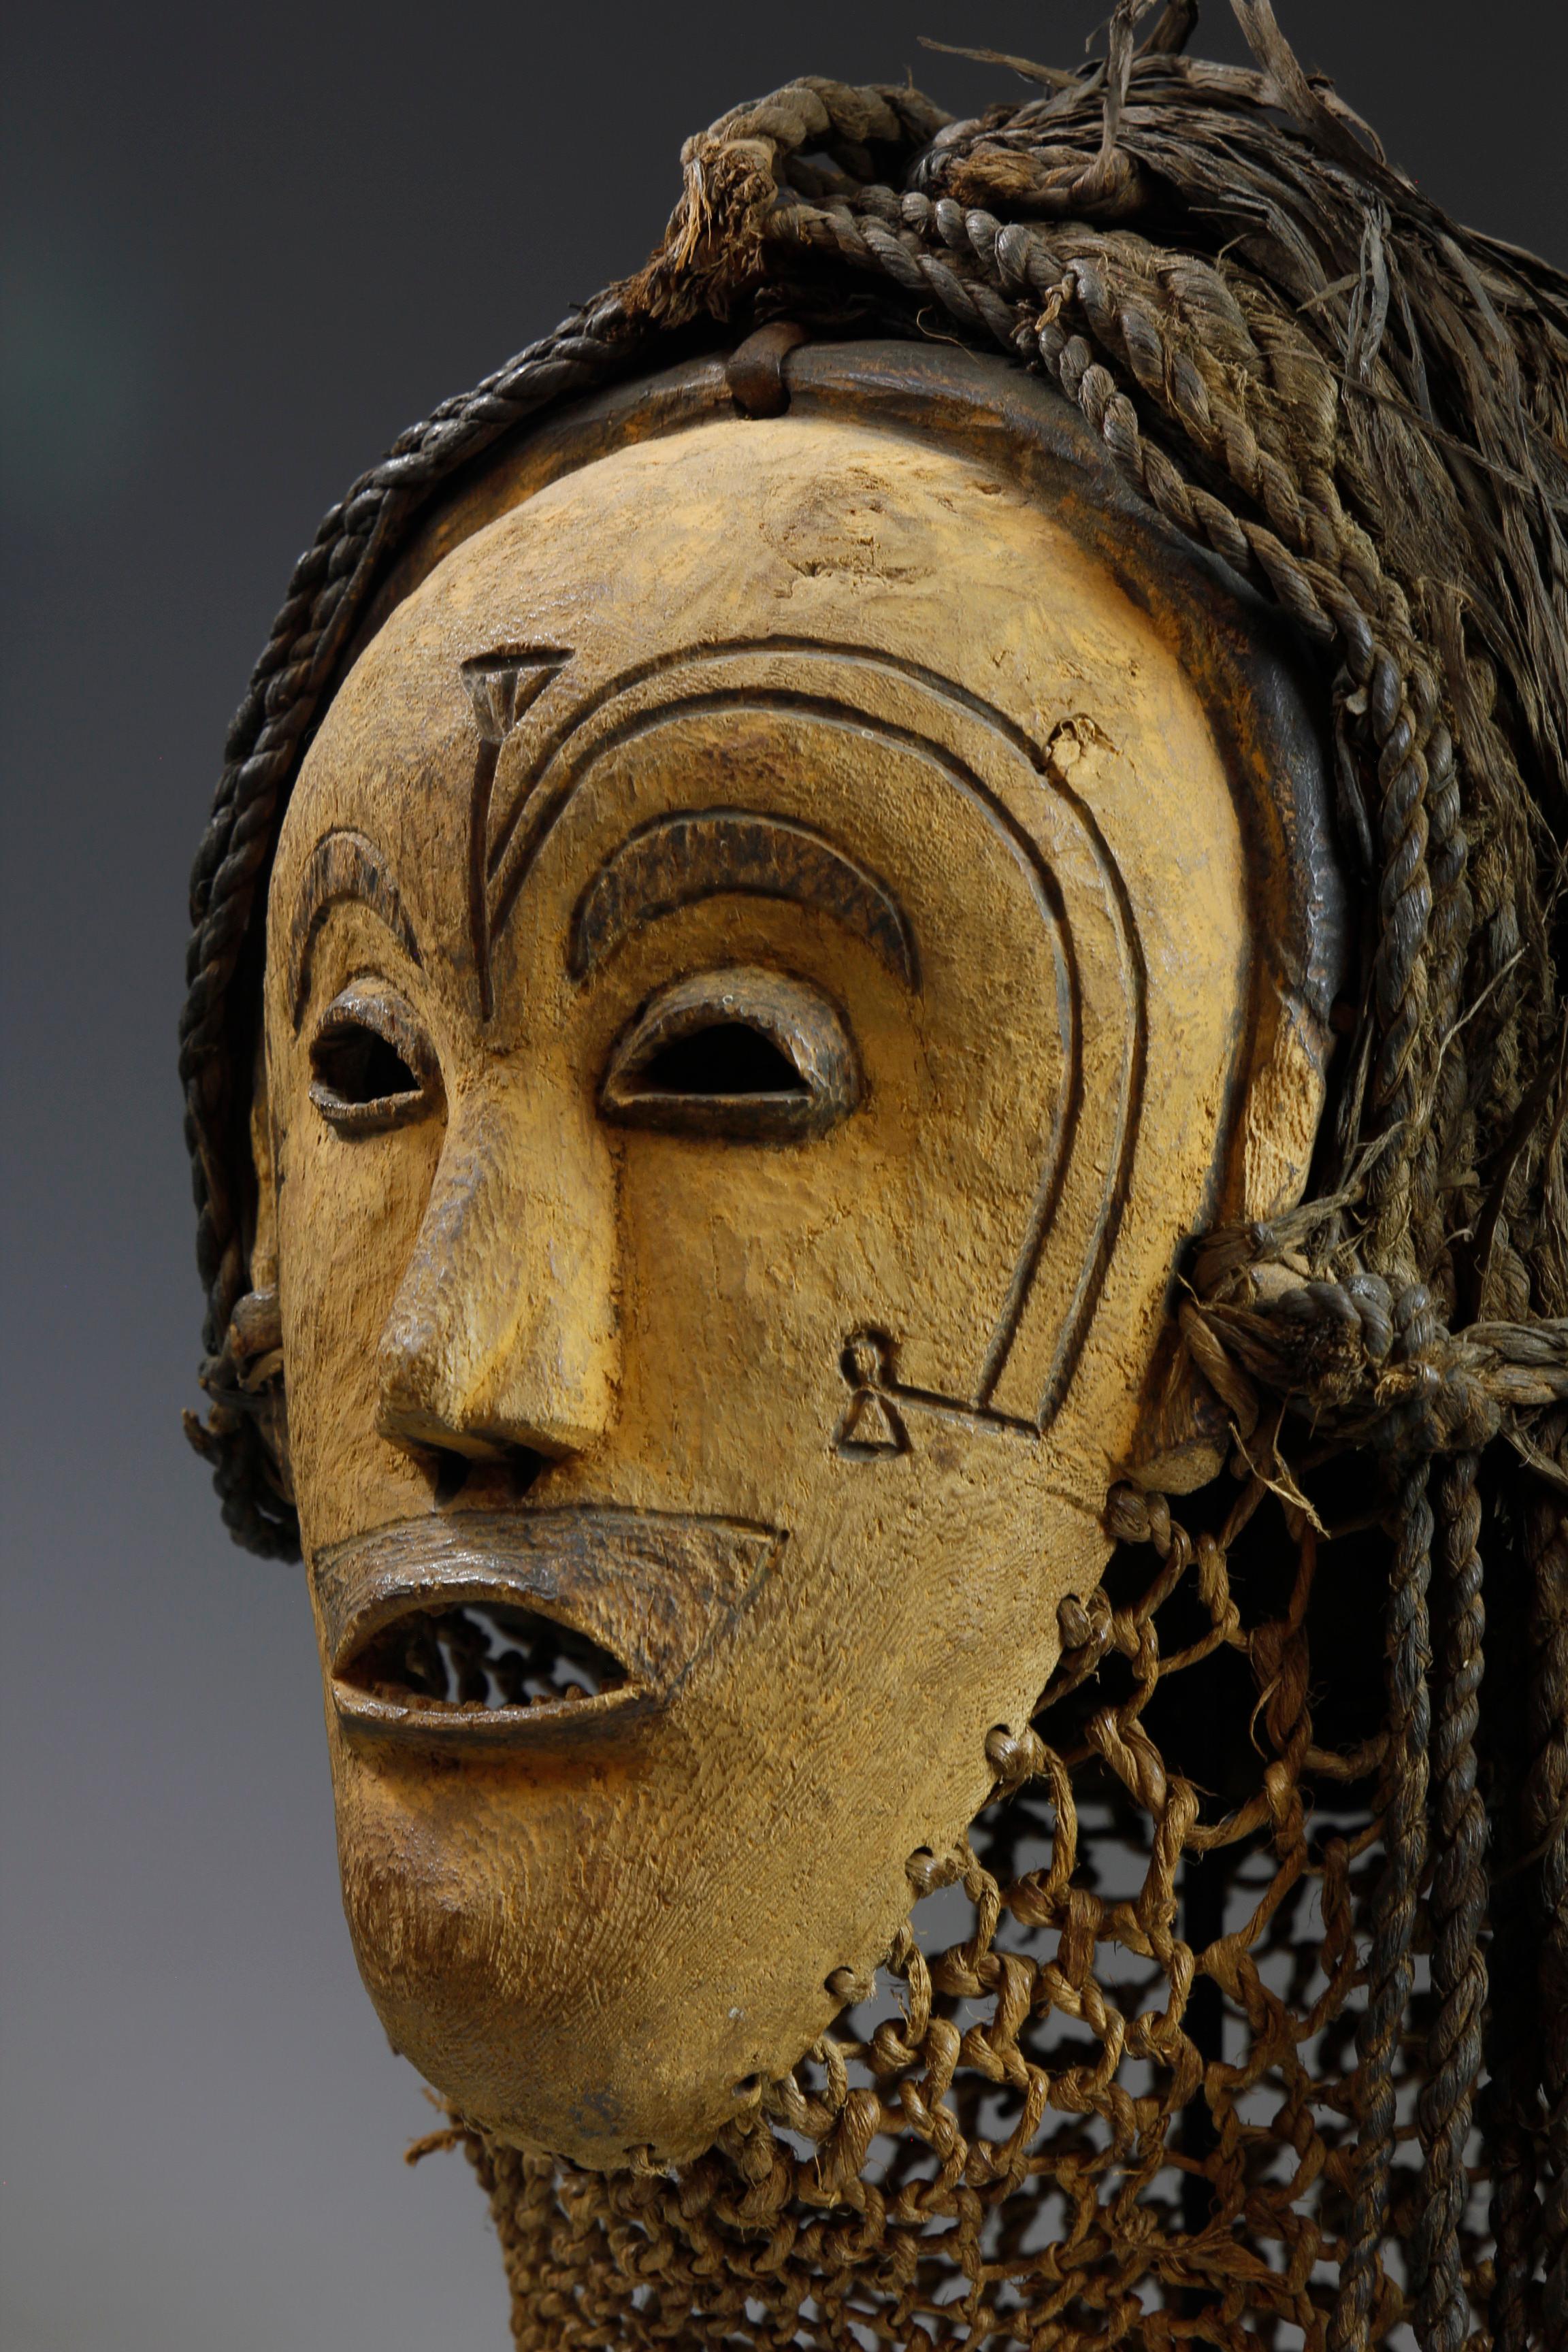 Ce masque du début du XXe siècle, de la culture Chokwe en Angola, présente des caractéristiques inhabituelles. Sculpté dans un bois clair et décoré de pigments jaunes, ce masque de qualité présente des marques faciales rares, qui ont été gravées à